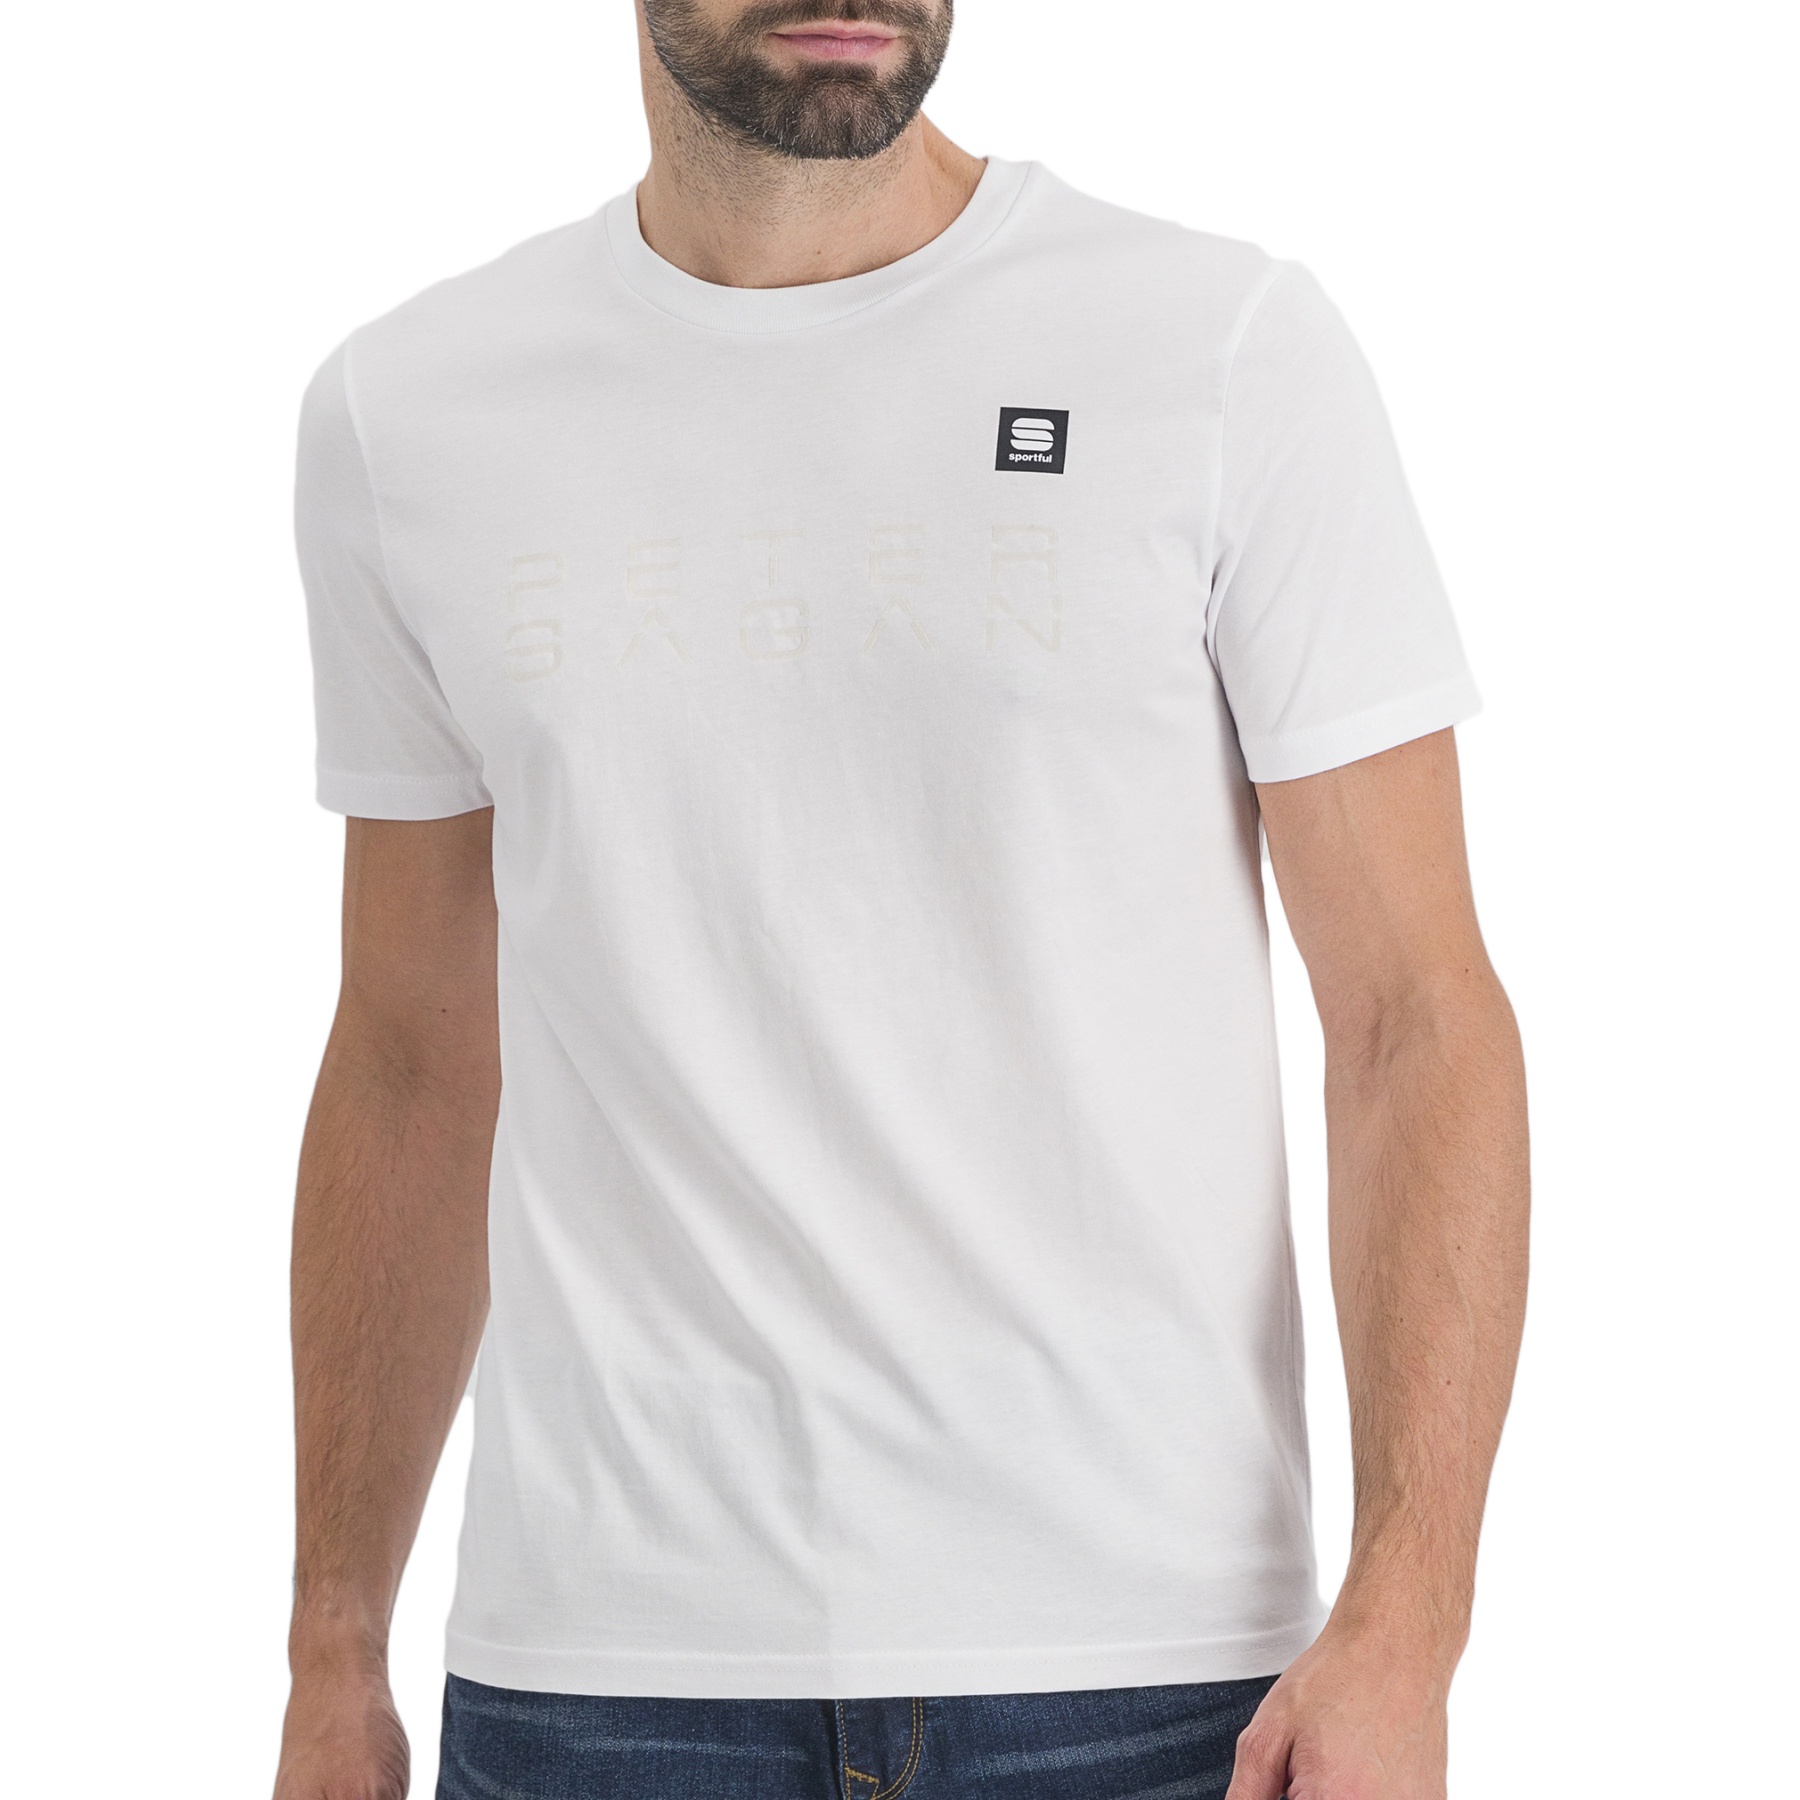 Produktbild von Sportful Peter Sagan T-Shirt - 101 Weiß